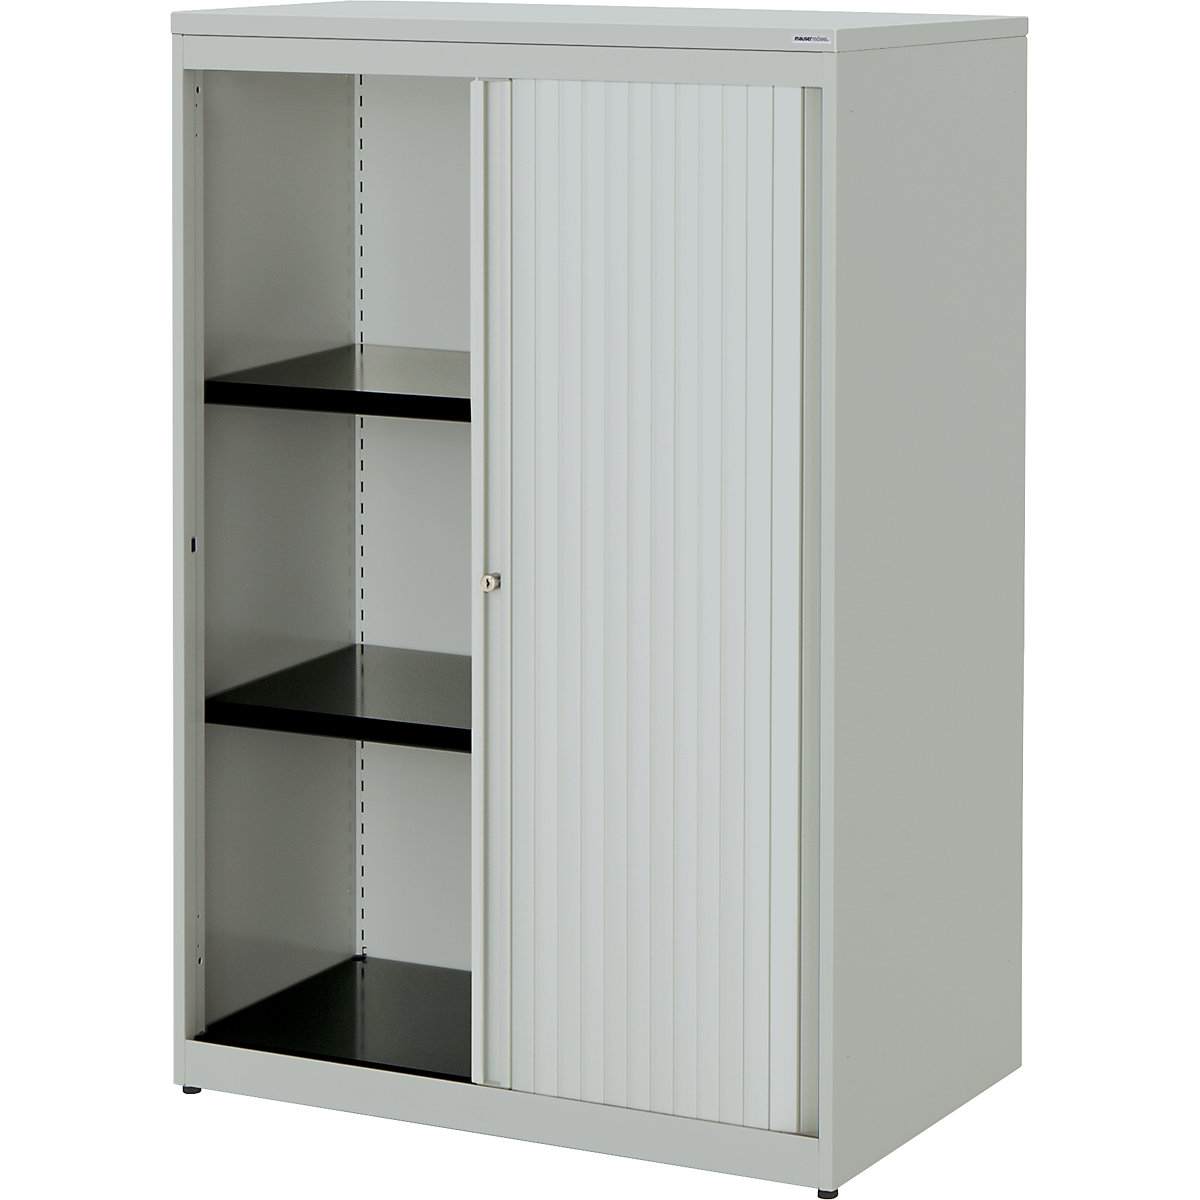 Horizontal roller shutter cupboard – mauser, HxWxD 1180 x 800 x 432 mm, plastic panel, 2 shelves, light grey / light grey / light grey-5